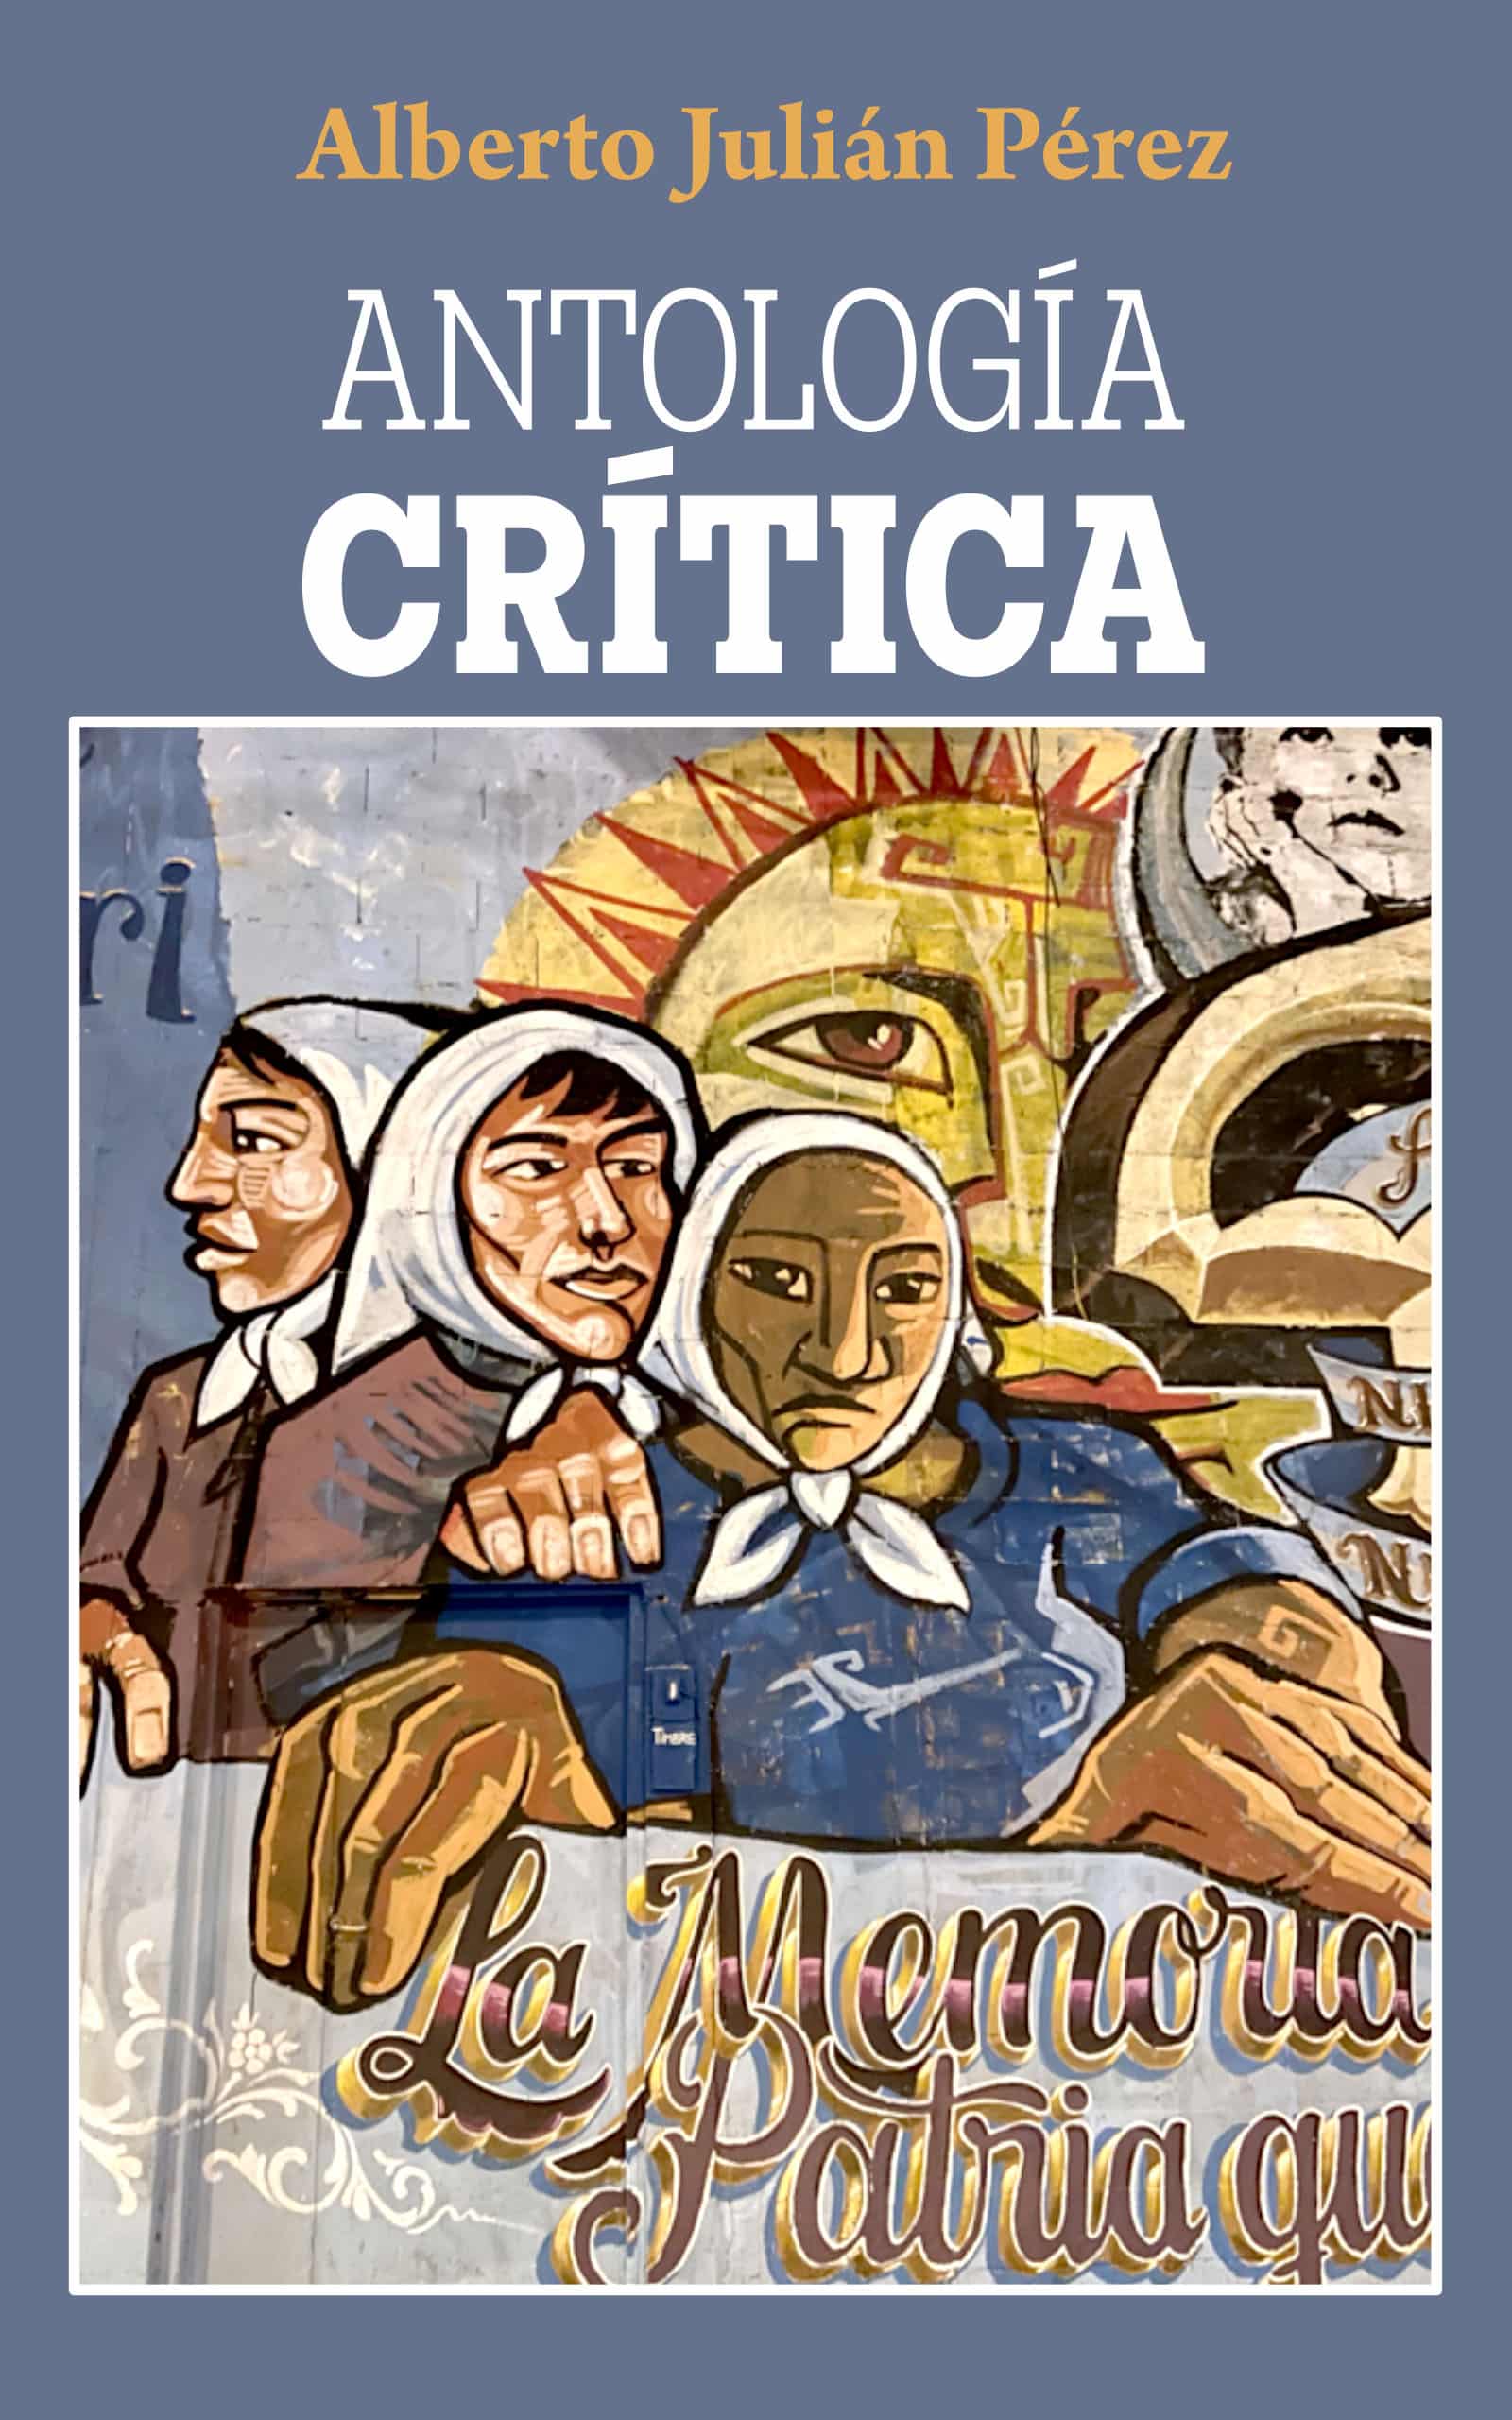 Antología crítica, de Alberto Julián Pérez